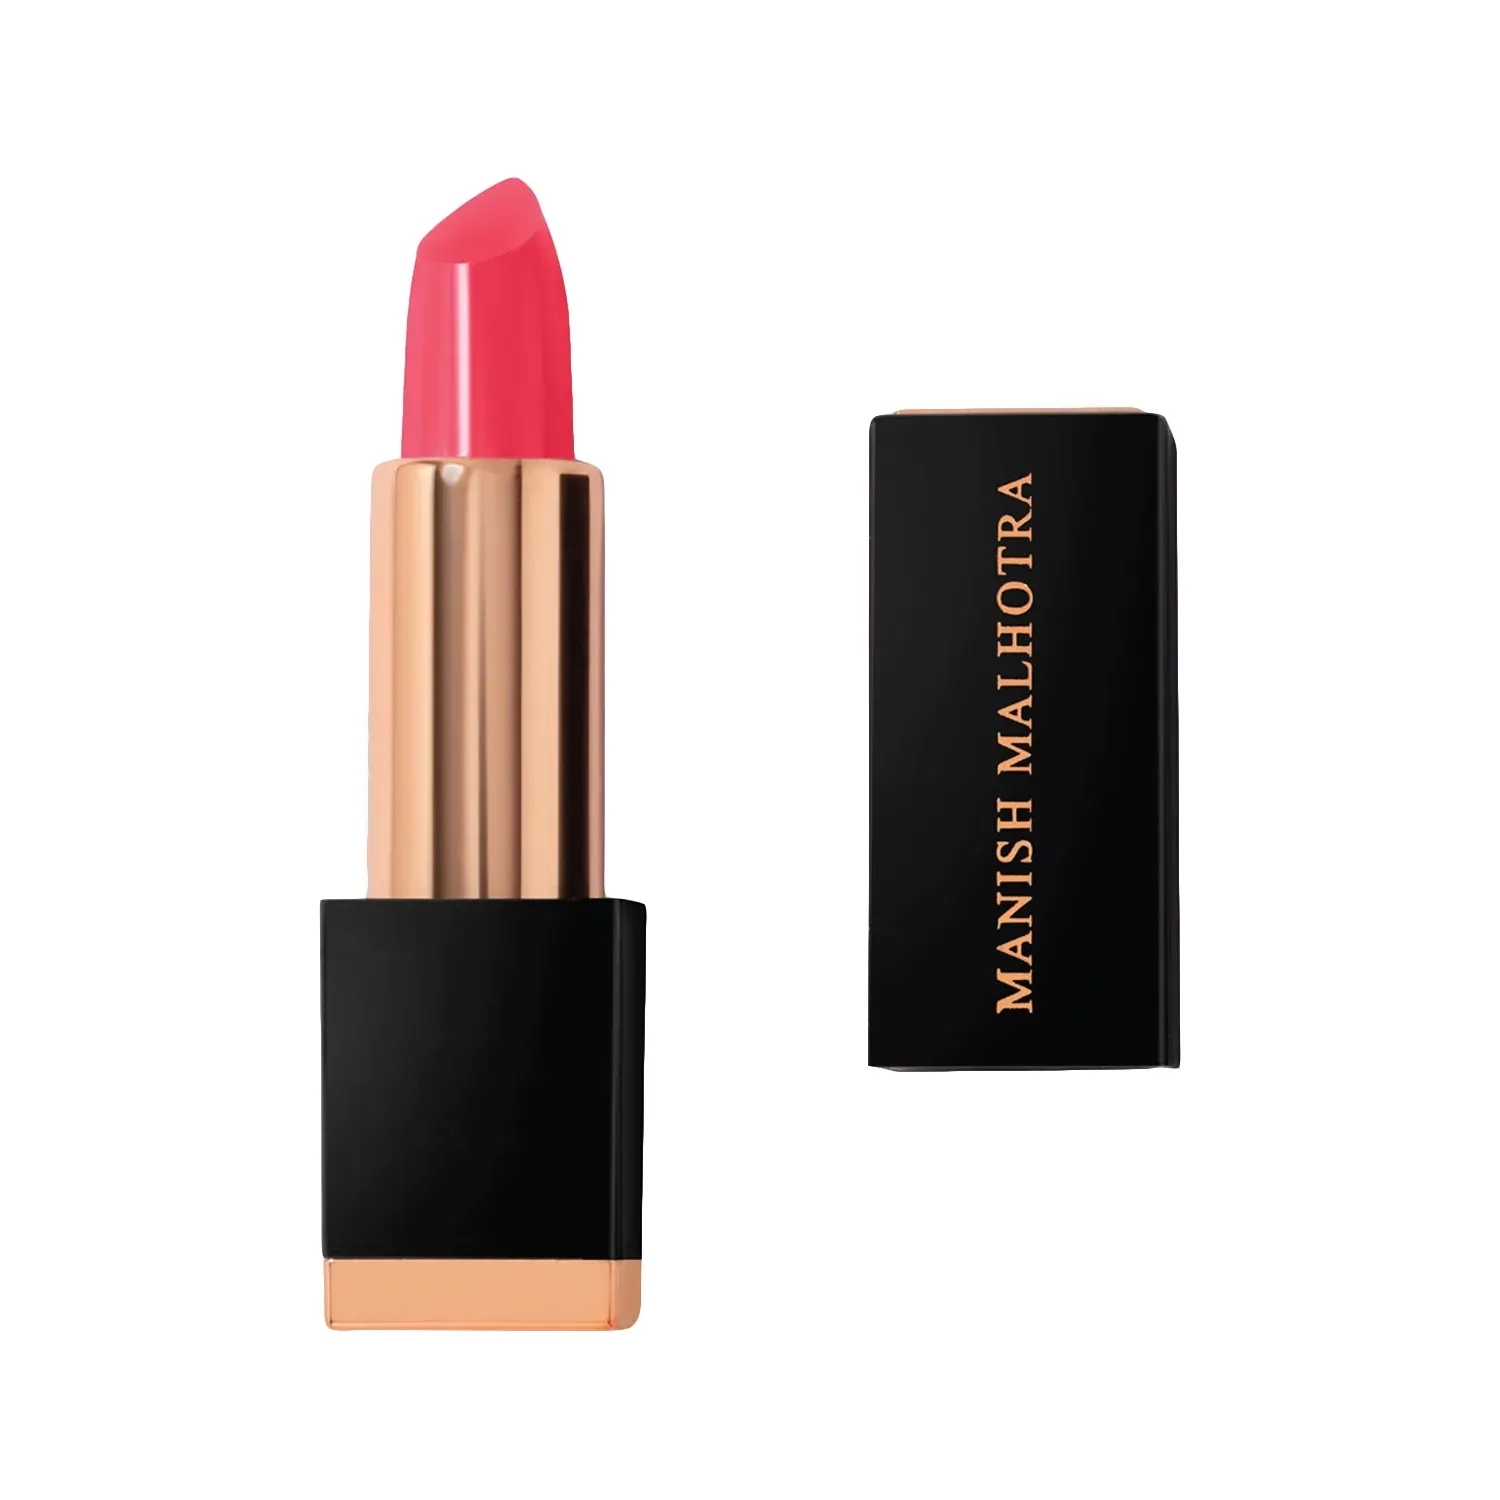 MyGlamm | MyGlamm Manish Malhotra Soft Matte Lipstick - Poppy Pink (4g)